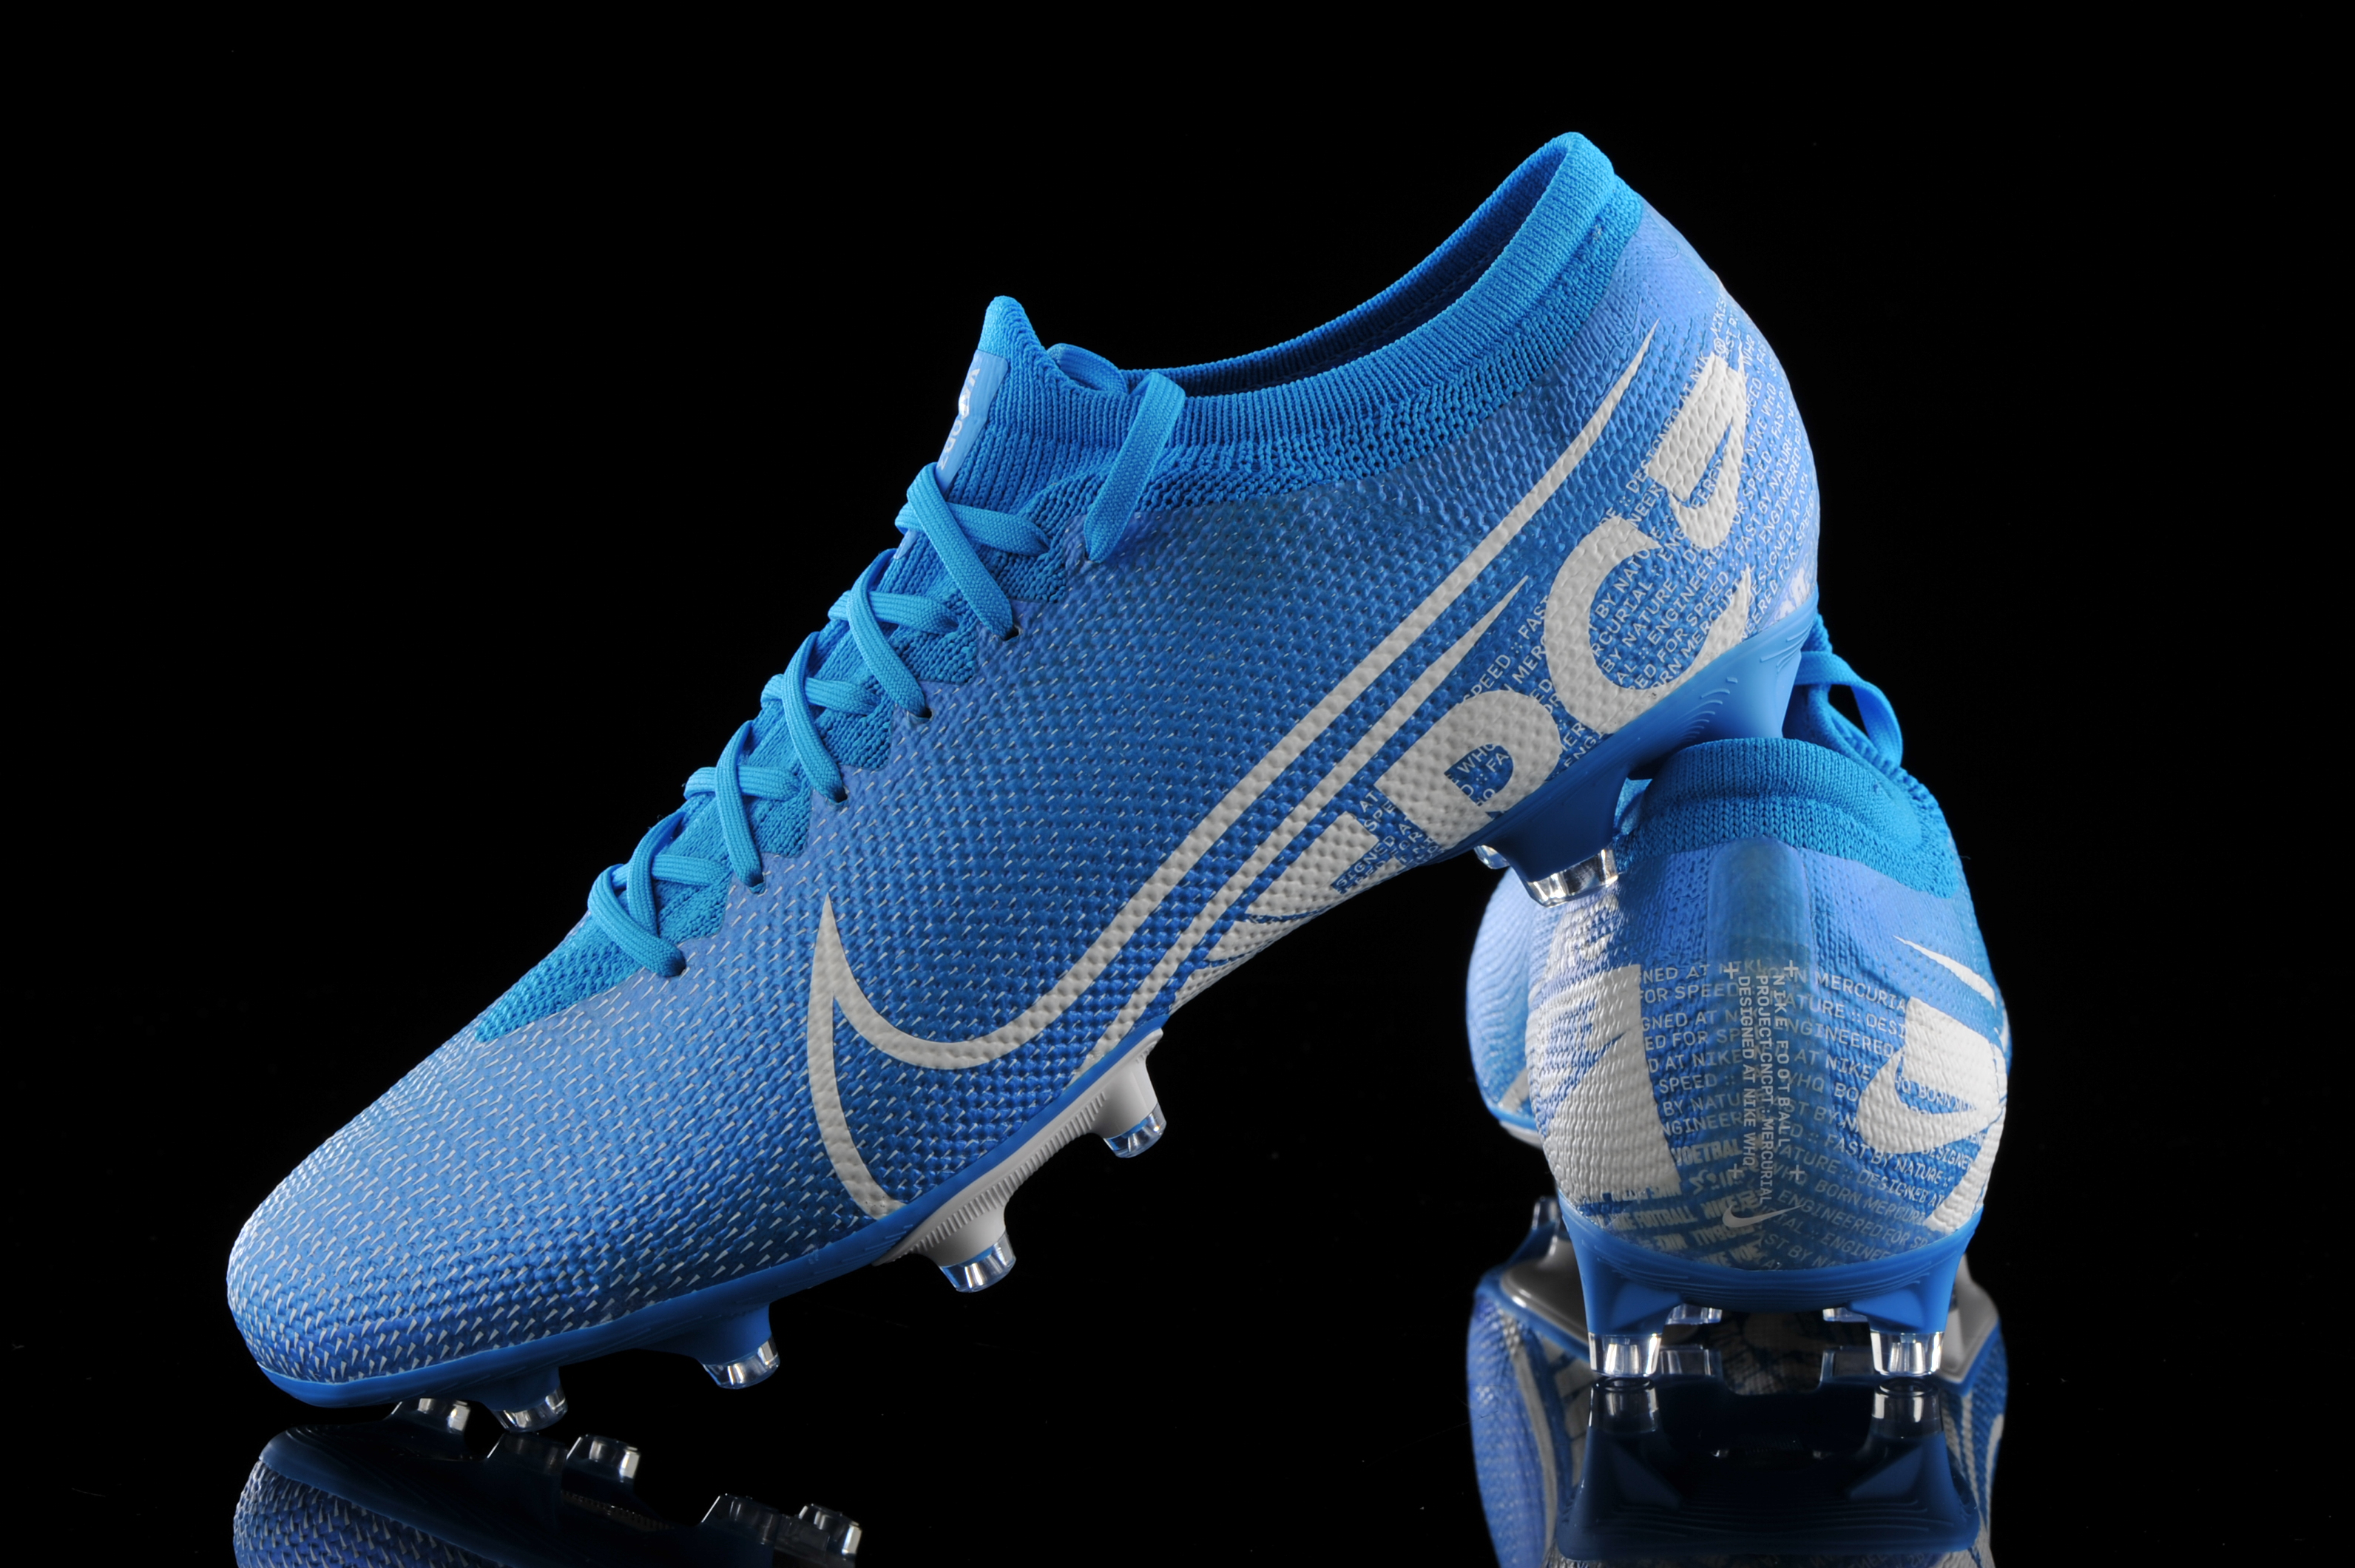 Details about Nike Mercurial Vapor 13 Pro FG Soccer Cleats.